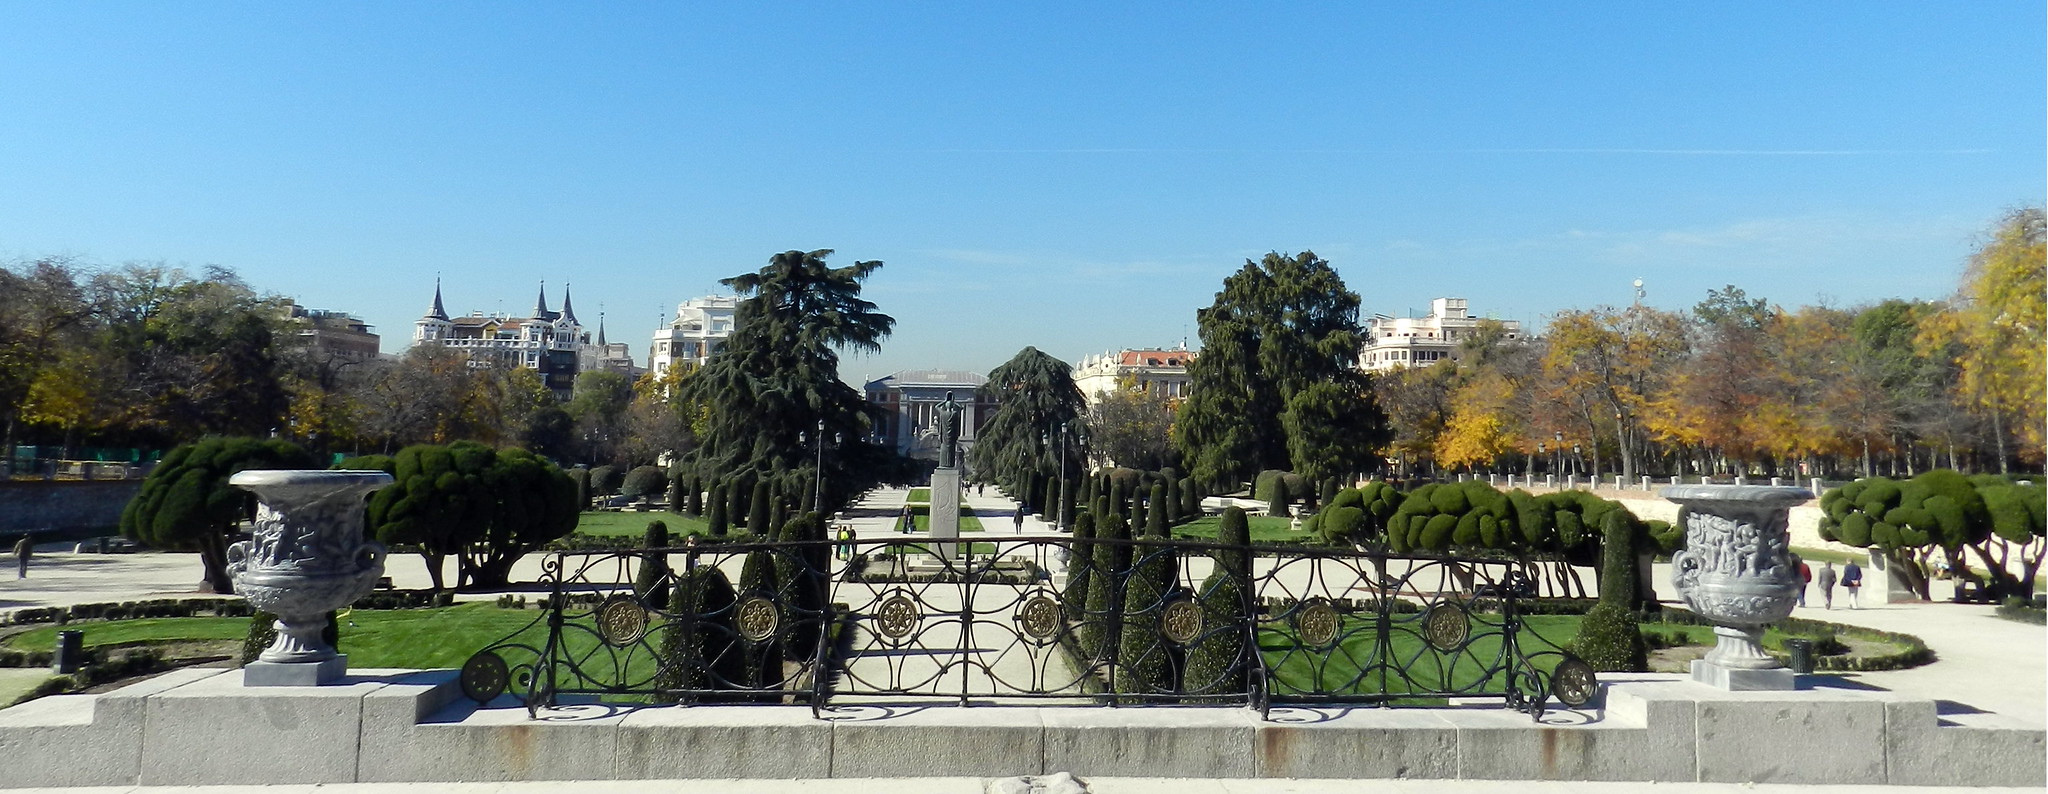 Monumento Jacinto Benavente y mirador Plaza Jardin del Parterre Parque del Retiro Madrid